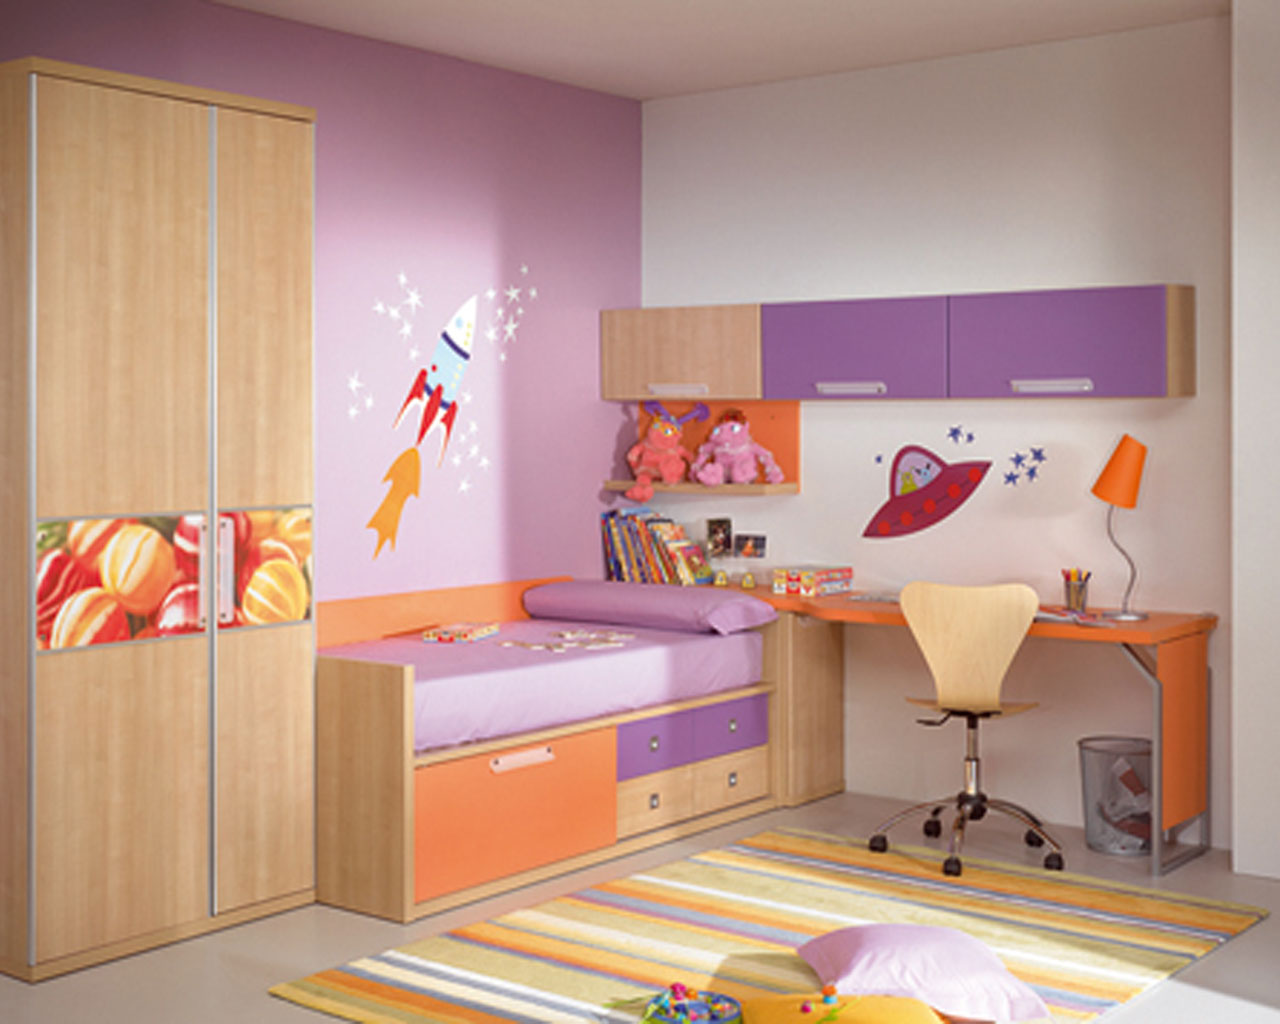 Toddler Room Design Ideas Older Childrens Bedroom Ideas Child Room Wall  Design Toddler Bedroom Decor